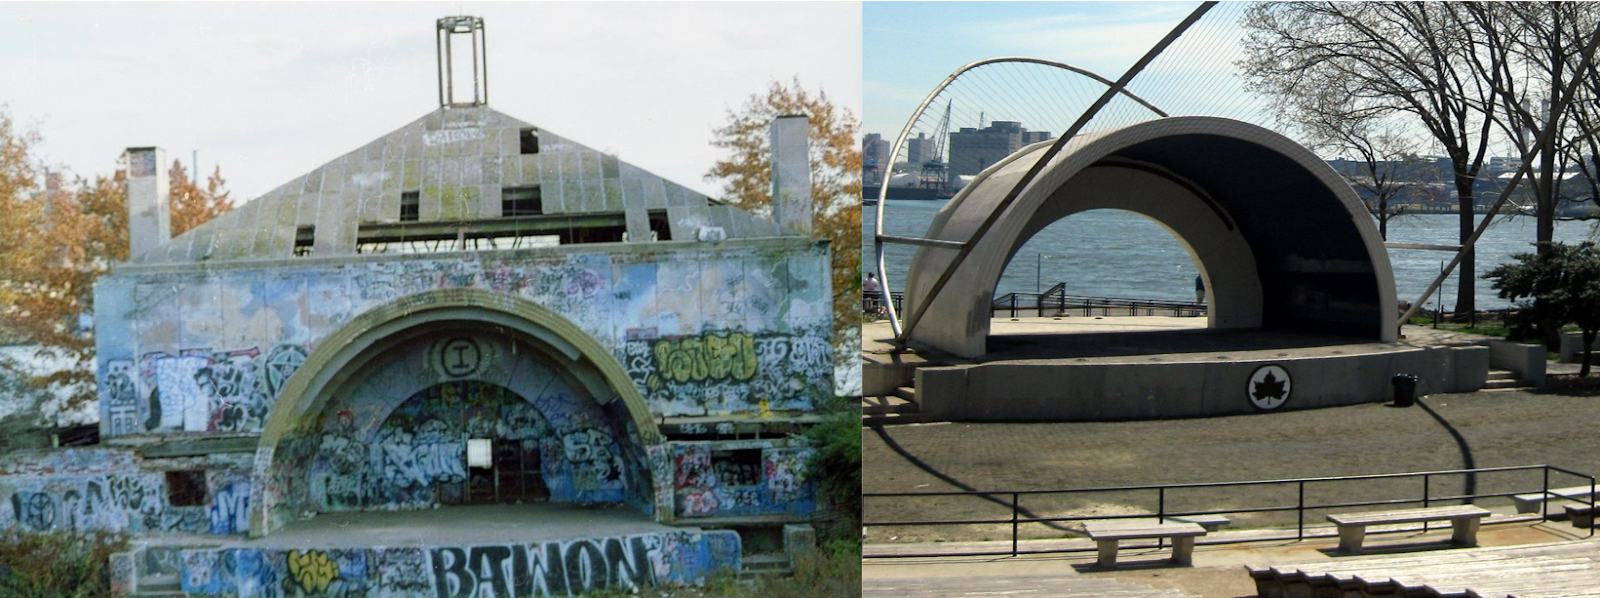 Laisser-Faire - East River Park, NYC, Amphitheater, 1988 et de nos jours